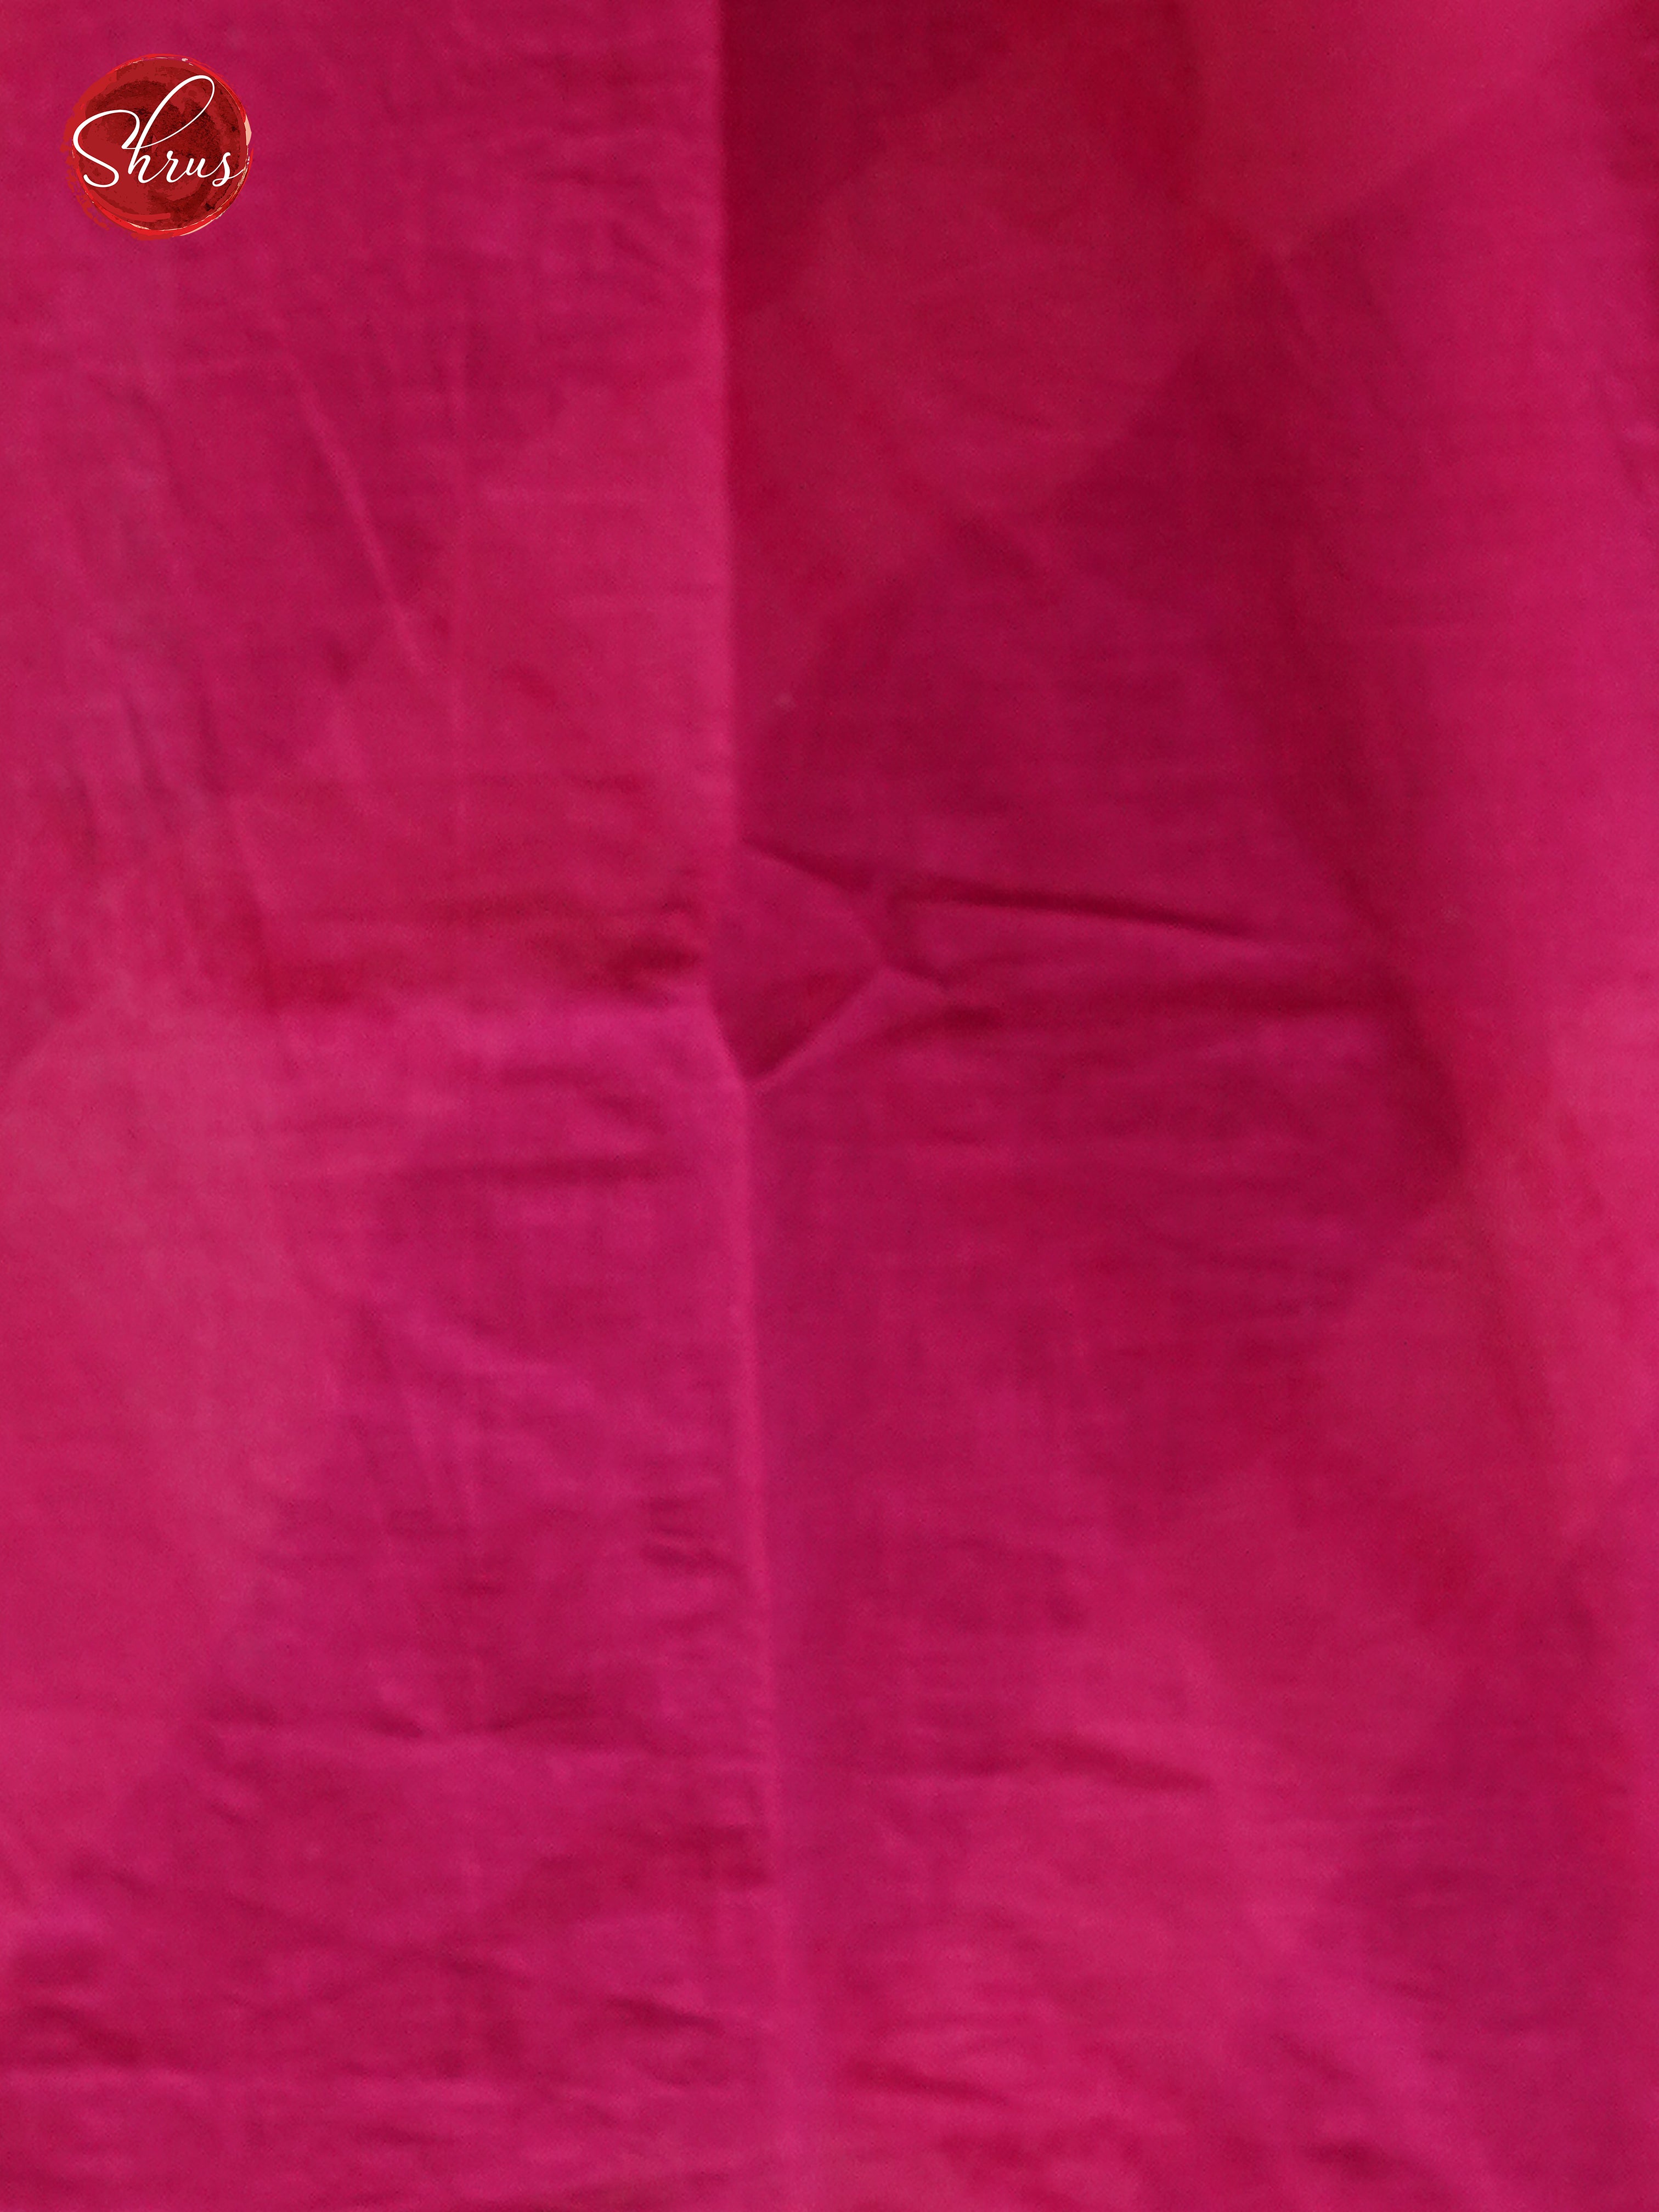 Grey & Pink - Jaipur cotton